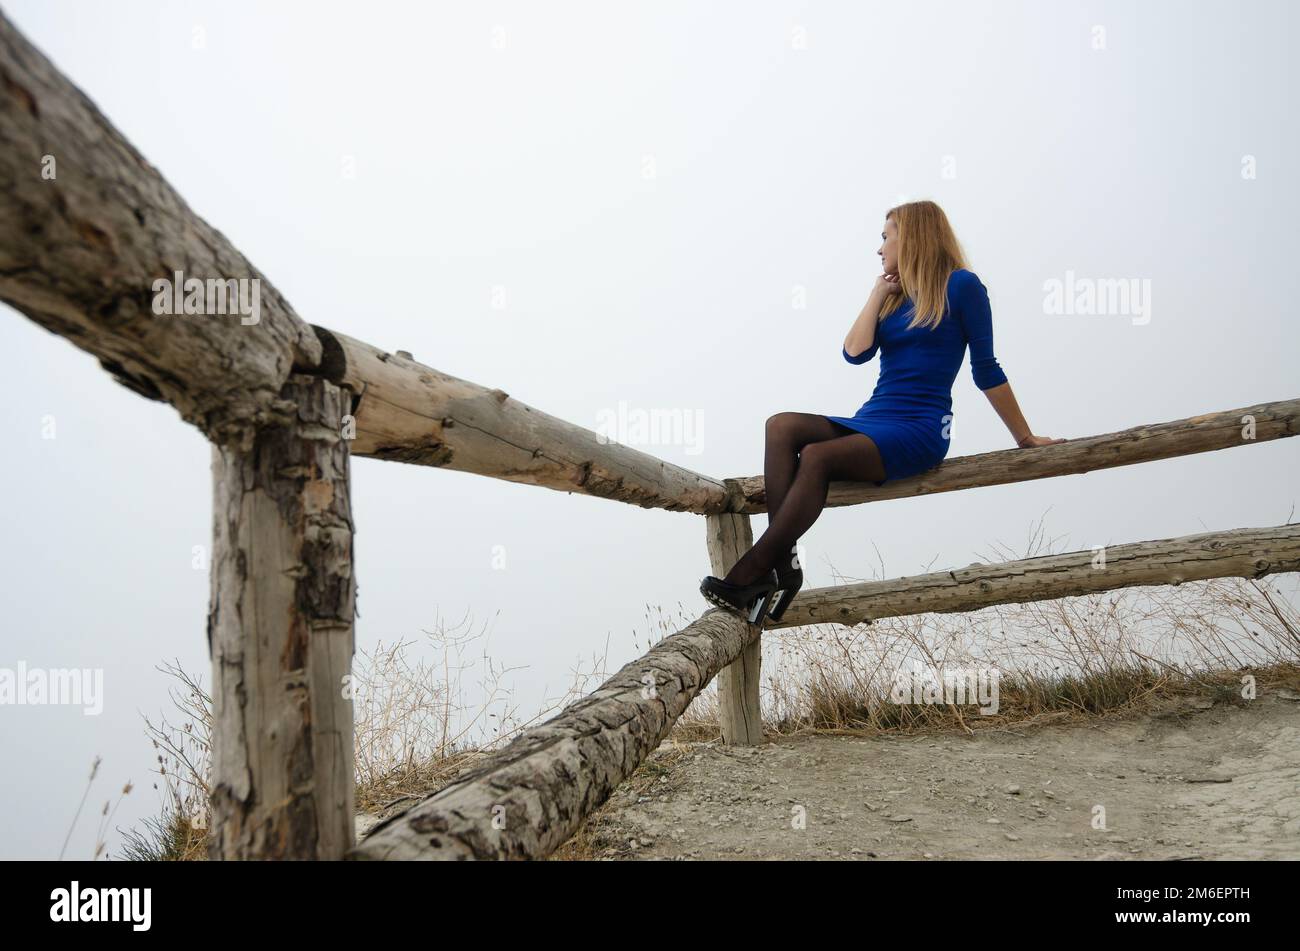 La fille est assise sur une clôture en bois, il y a un brouillard solide autour de la fille Banque D'Images